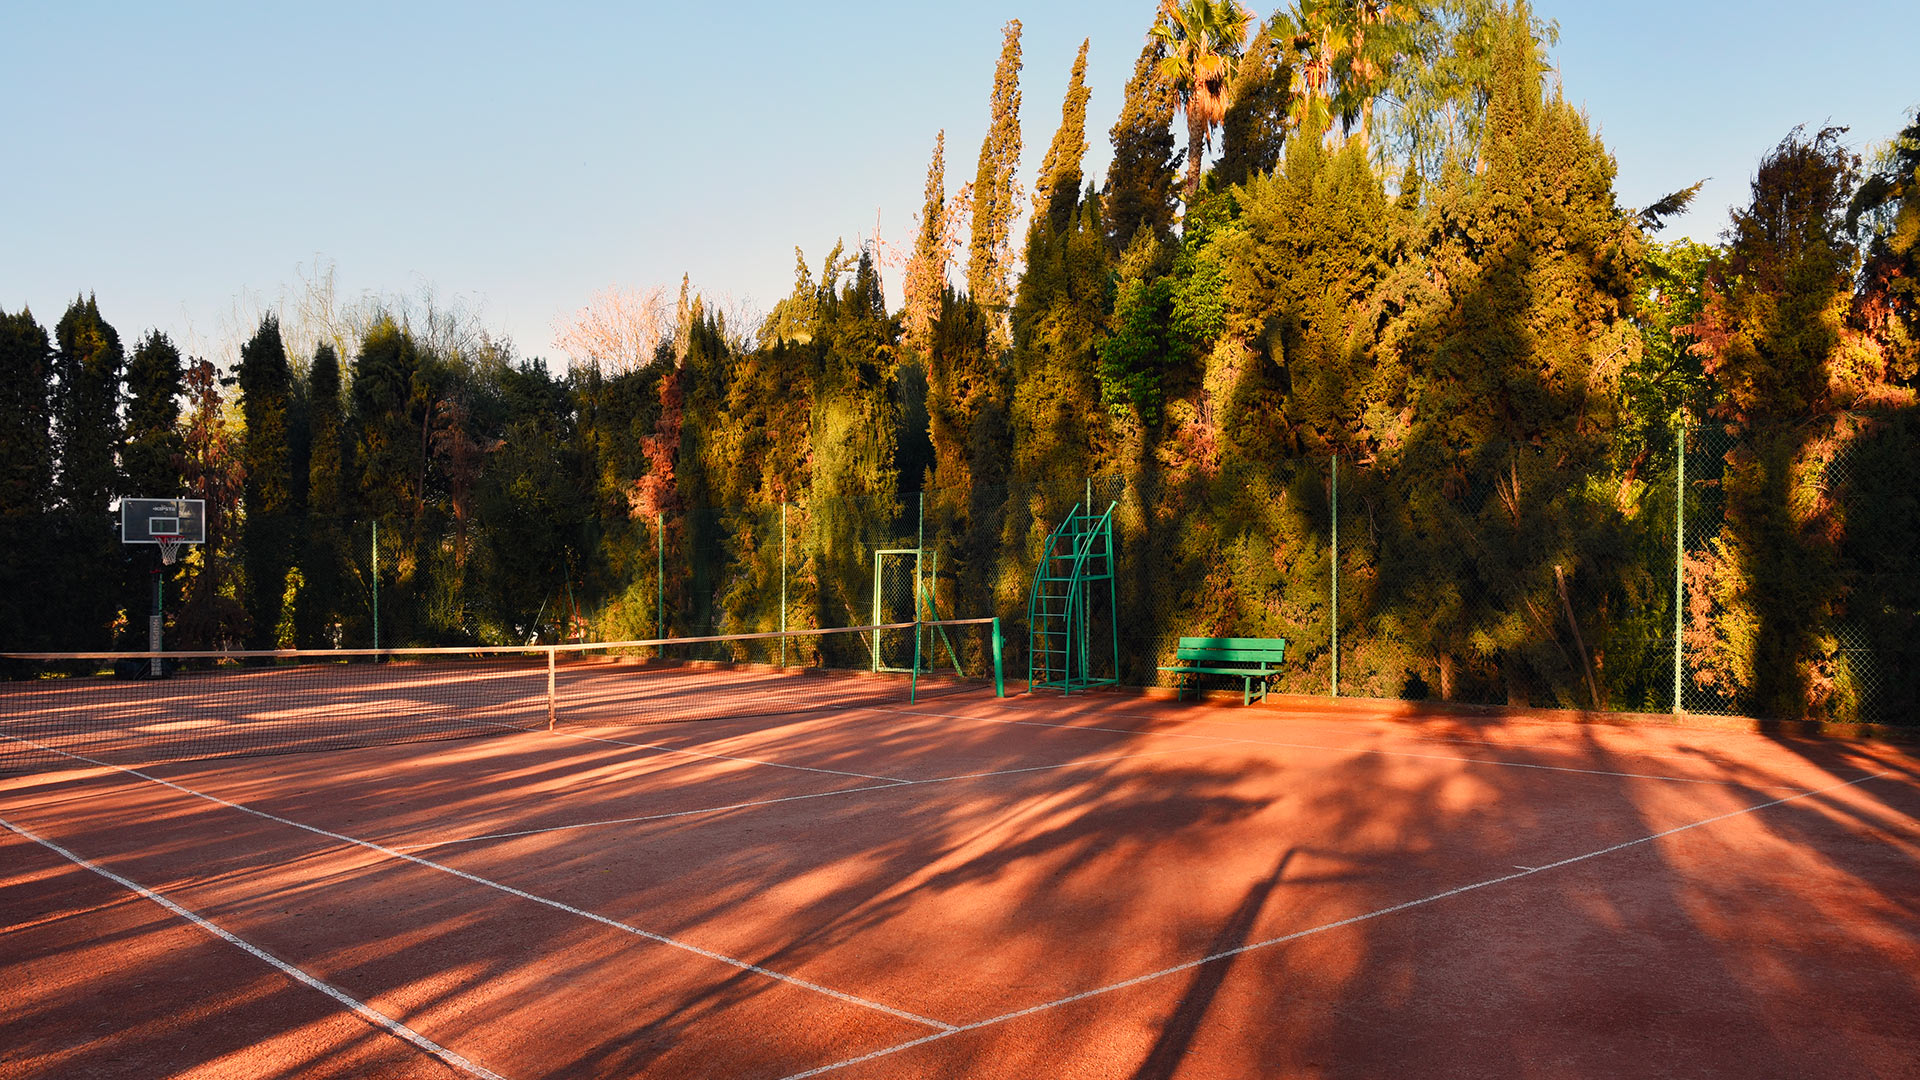 Tennis - Dar Abiad